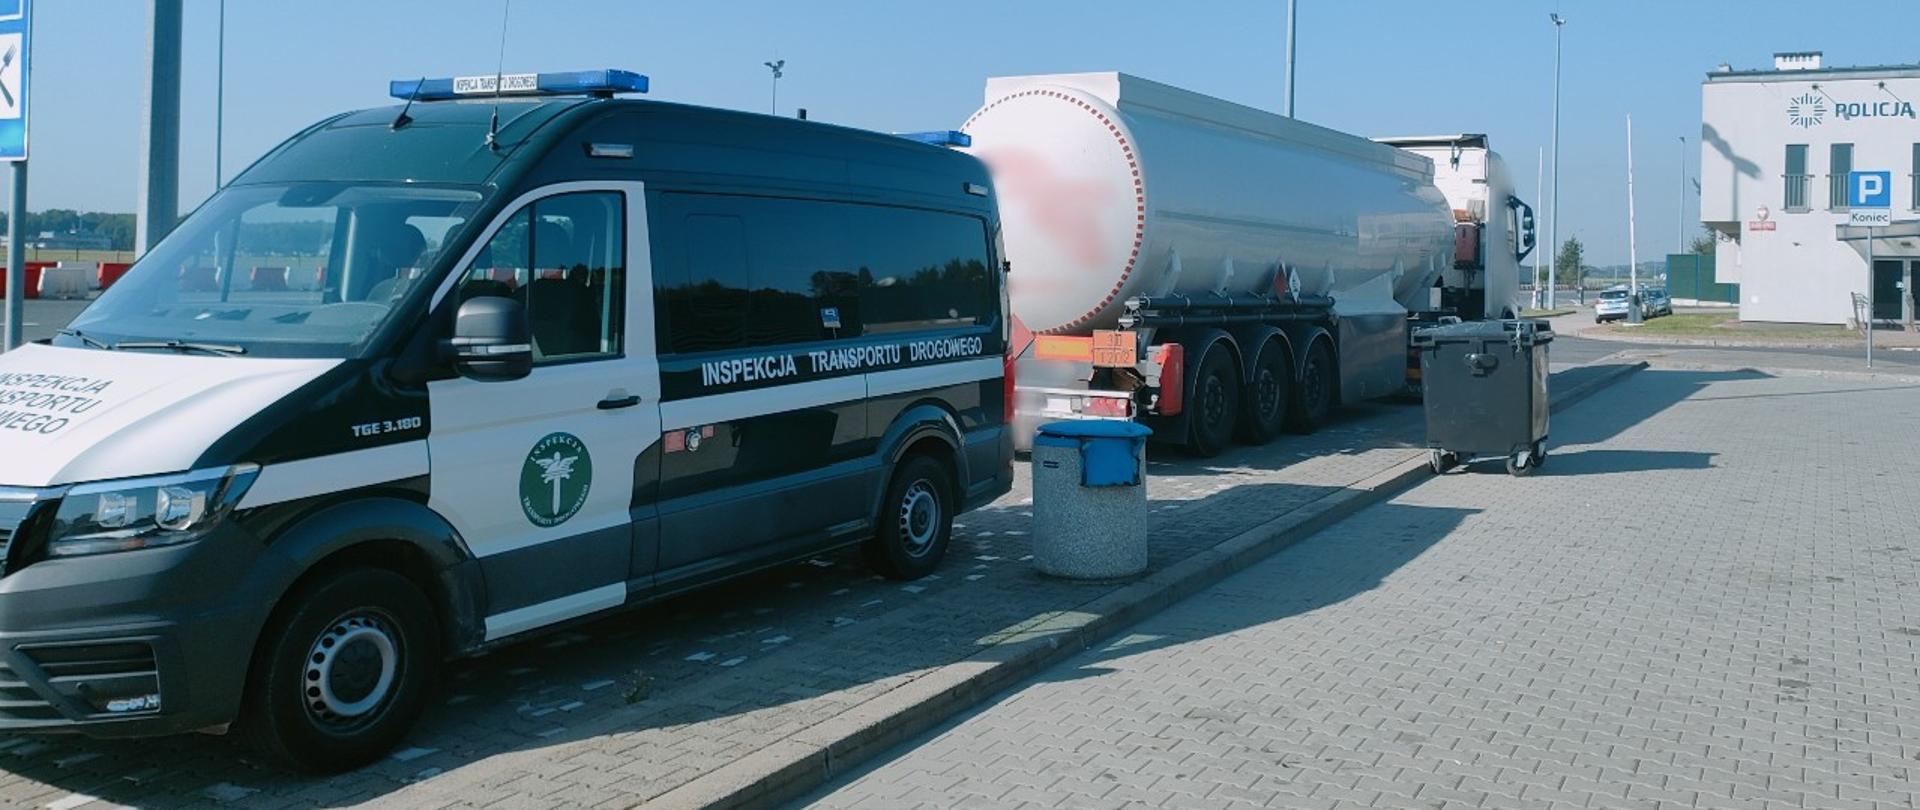 Na pierwszym planie (od lewej strony) przód i lewy bok oznakowanego furgonu małopolskiej ITD i stojący za nim zestaw ciężarowy z naczepą-cysterną przewożącą olej opałowy. W tle: budynek autostradowego posterunku Policji.